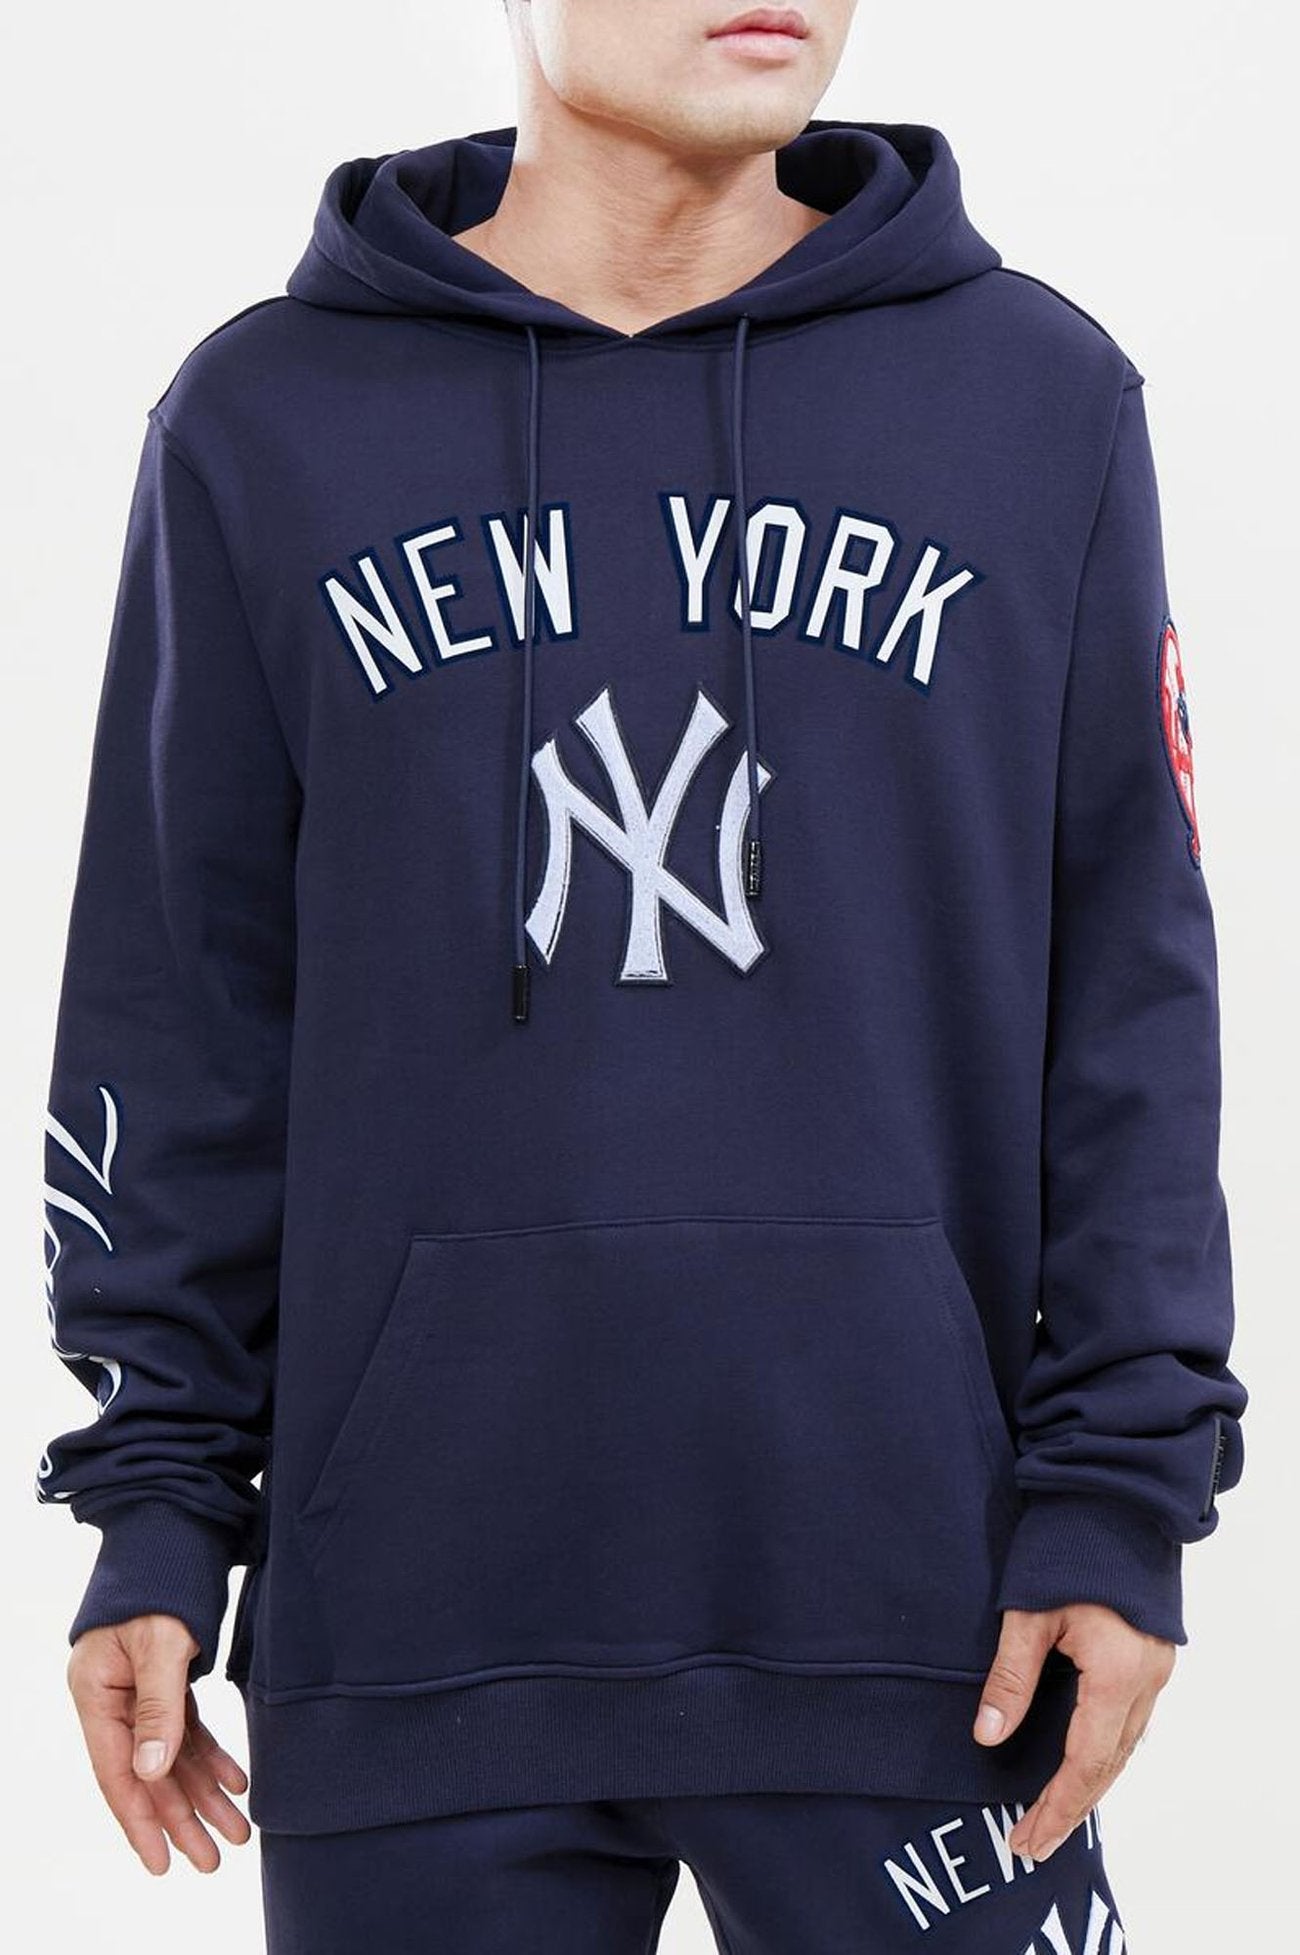 Supreme 2015 x Yankees Hoodie - Blue Sweatshirts & Hoodies, Clothing -  WSPME58209